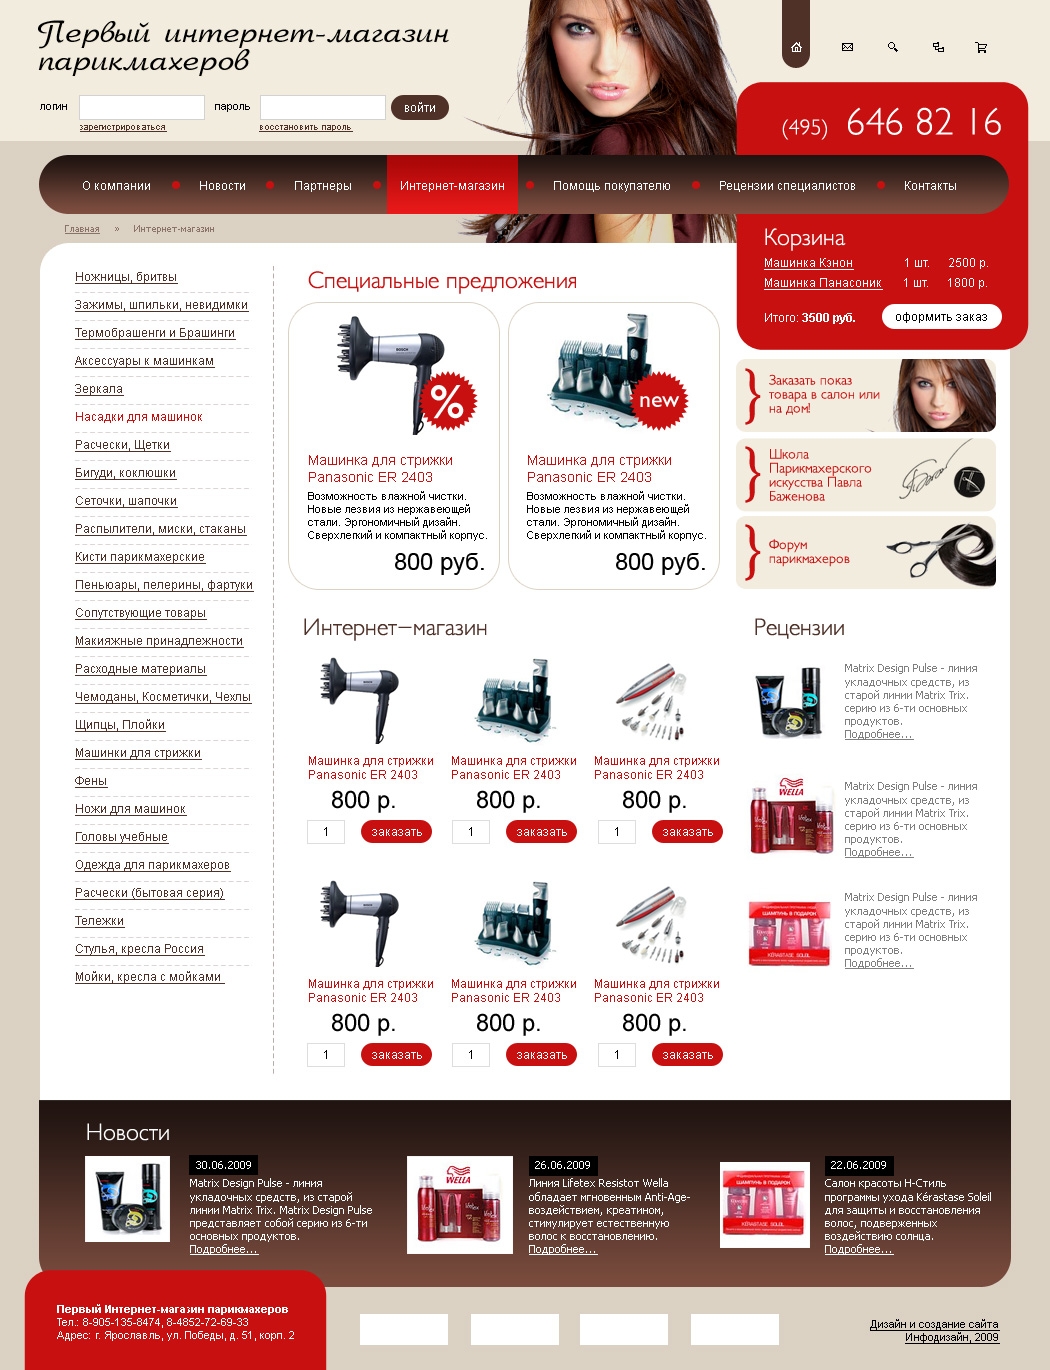 Разработка первого интернет-магазина для парикмахеров Parikmag.ru